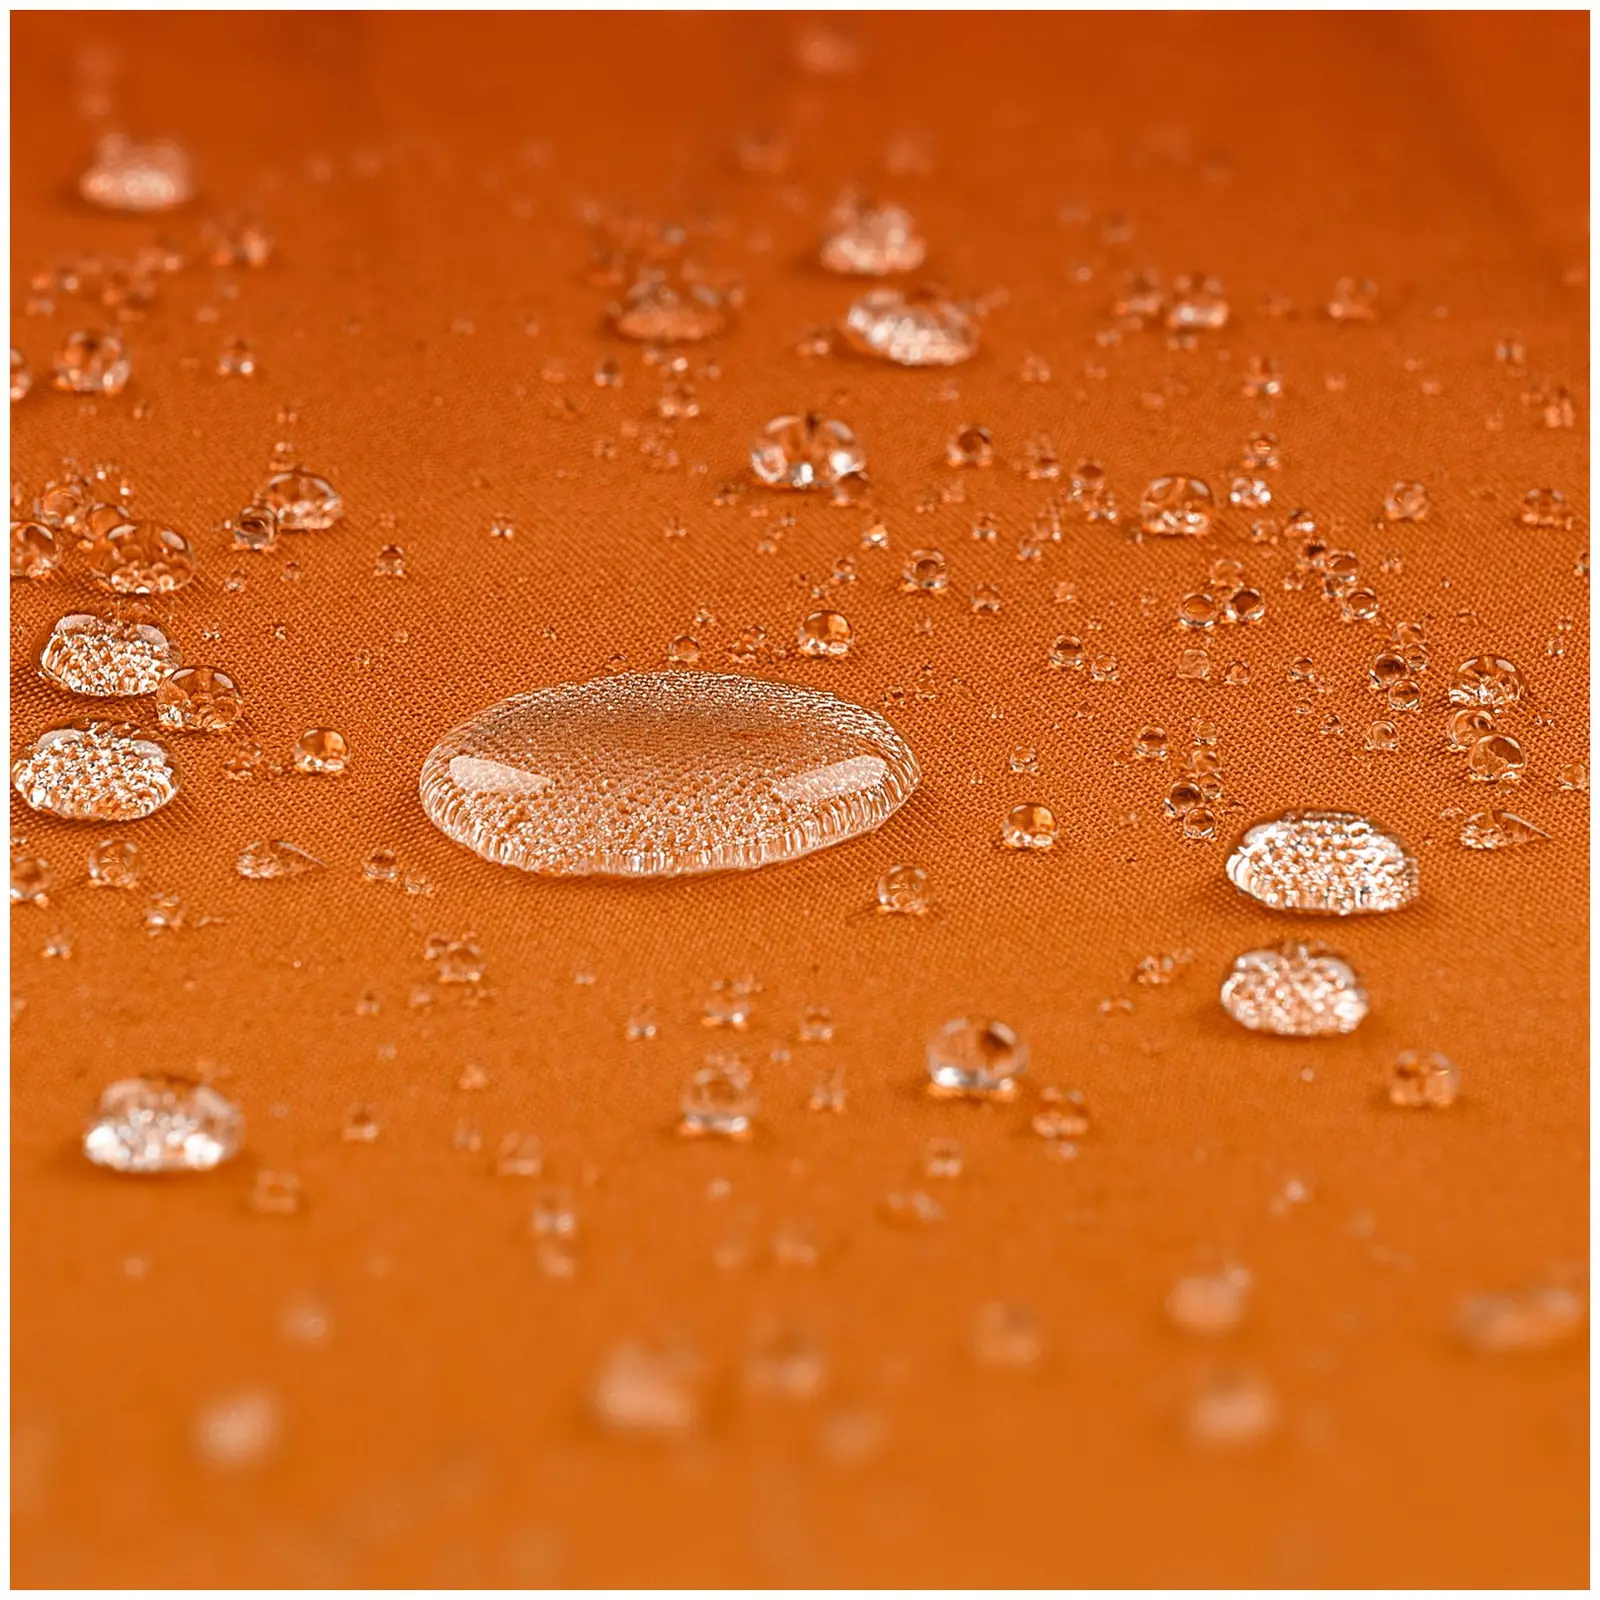 Градински чадър - Оранжев - кръгъл - Ø 300 см - накланящ се и въртящ се